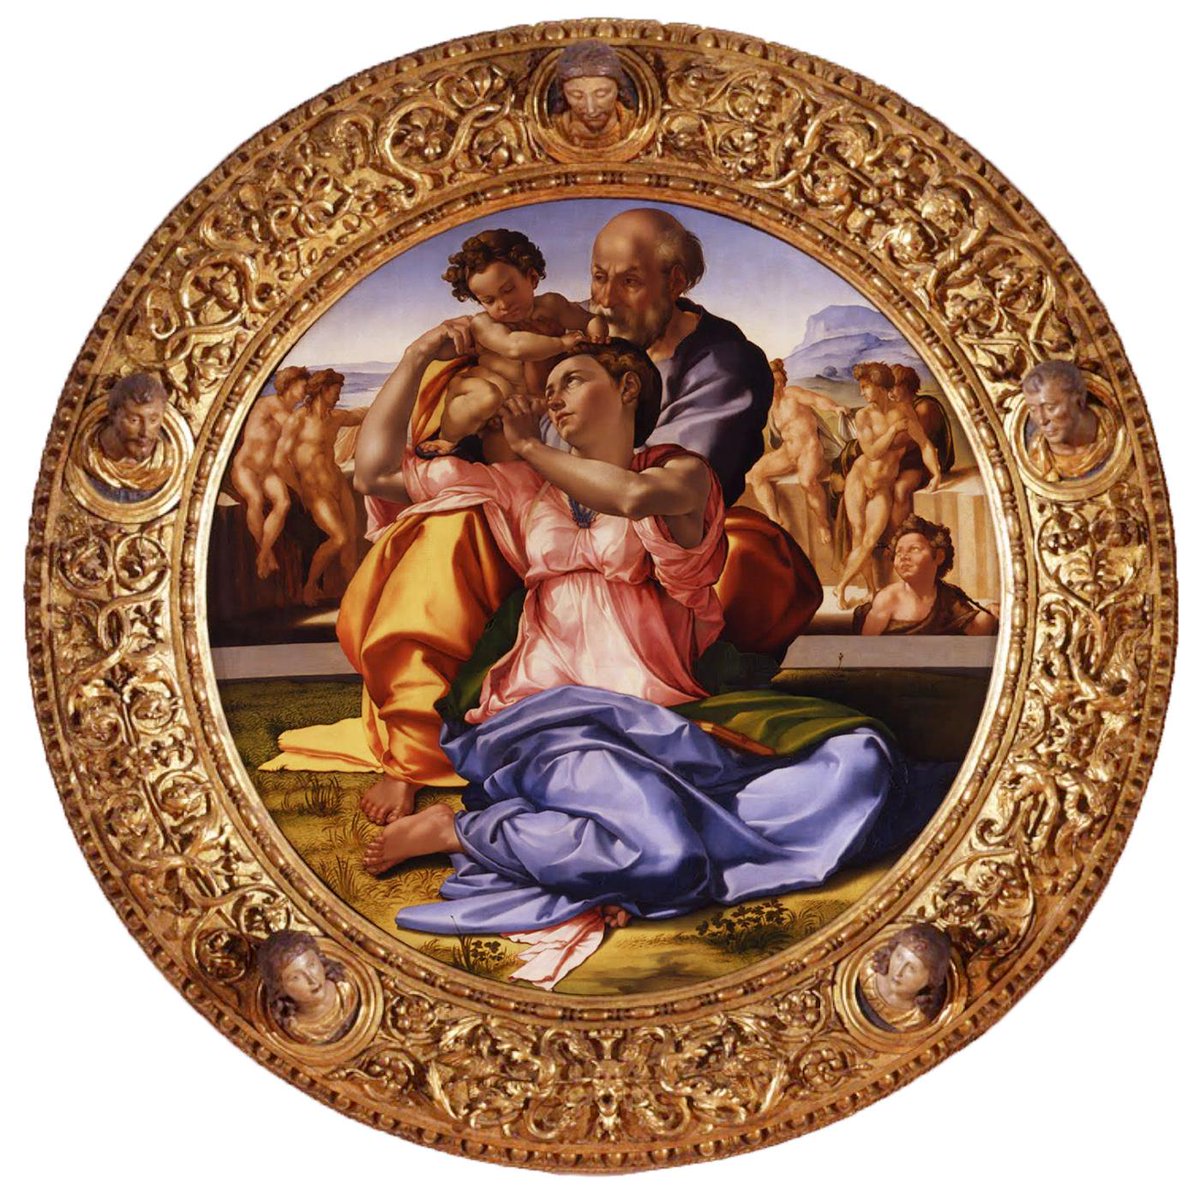 🎨Michelangelo Buonarroti, Sacra famiglia, detta “Tondo Doni”, 1505-1506, tempera grassa su tavola, Galleria degli Uffizi, Firenze.